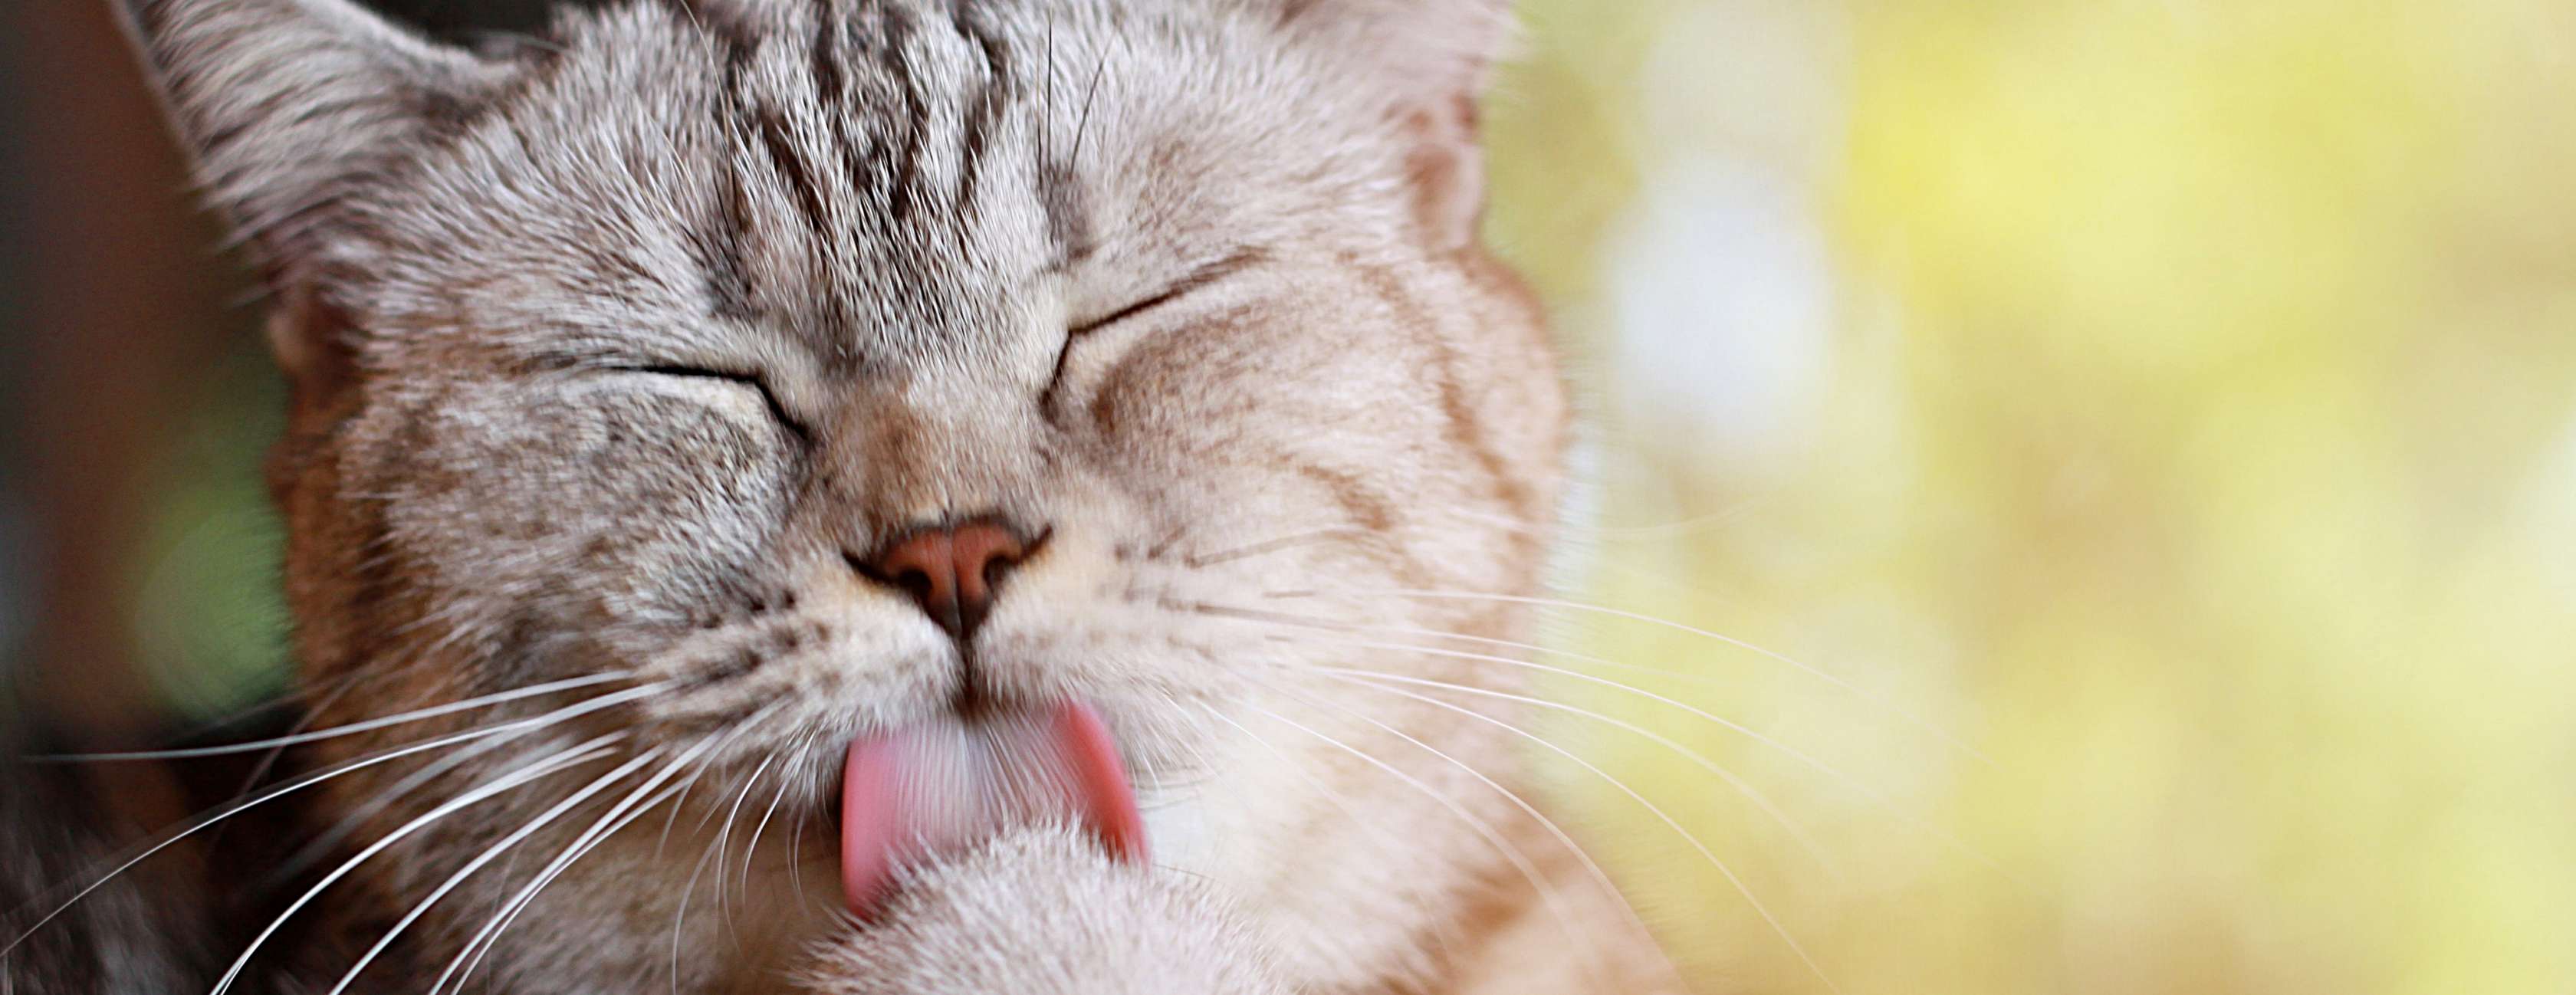 Allianz - Katzenallergie: Katze putzt ihre Pfote